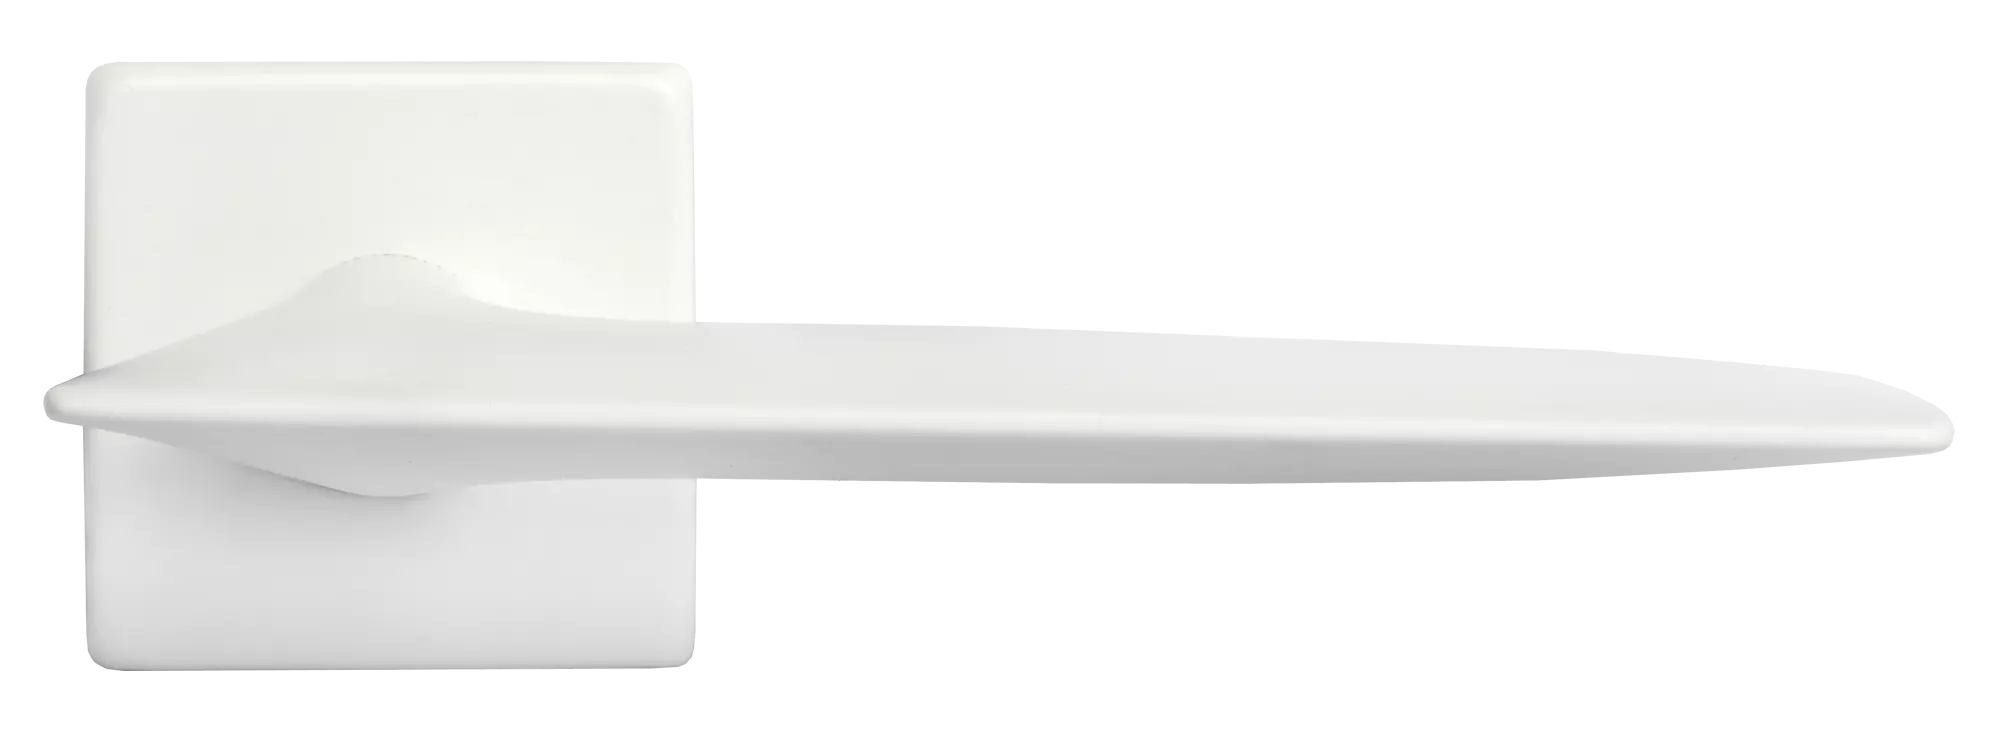 GALACTIC S5 BIA, ручка дверная, цвет - белый фото купить в Самаре